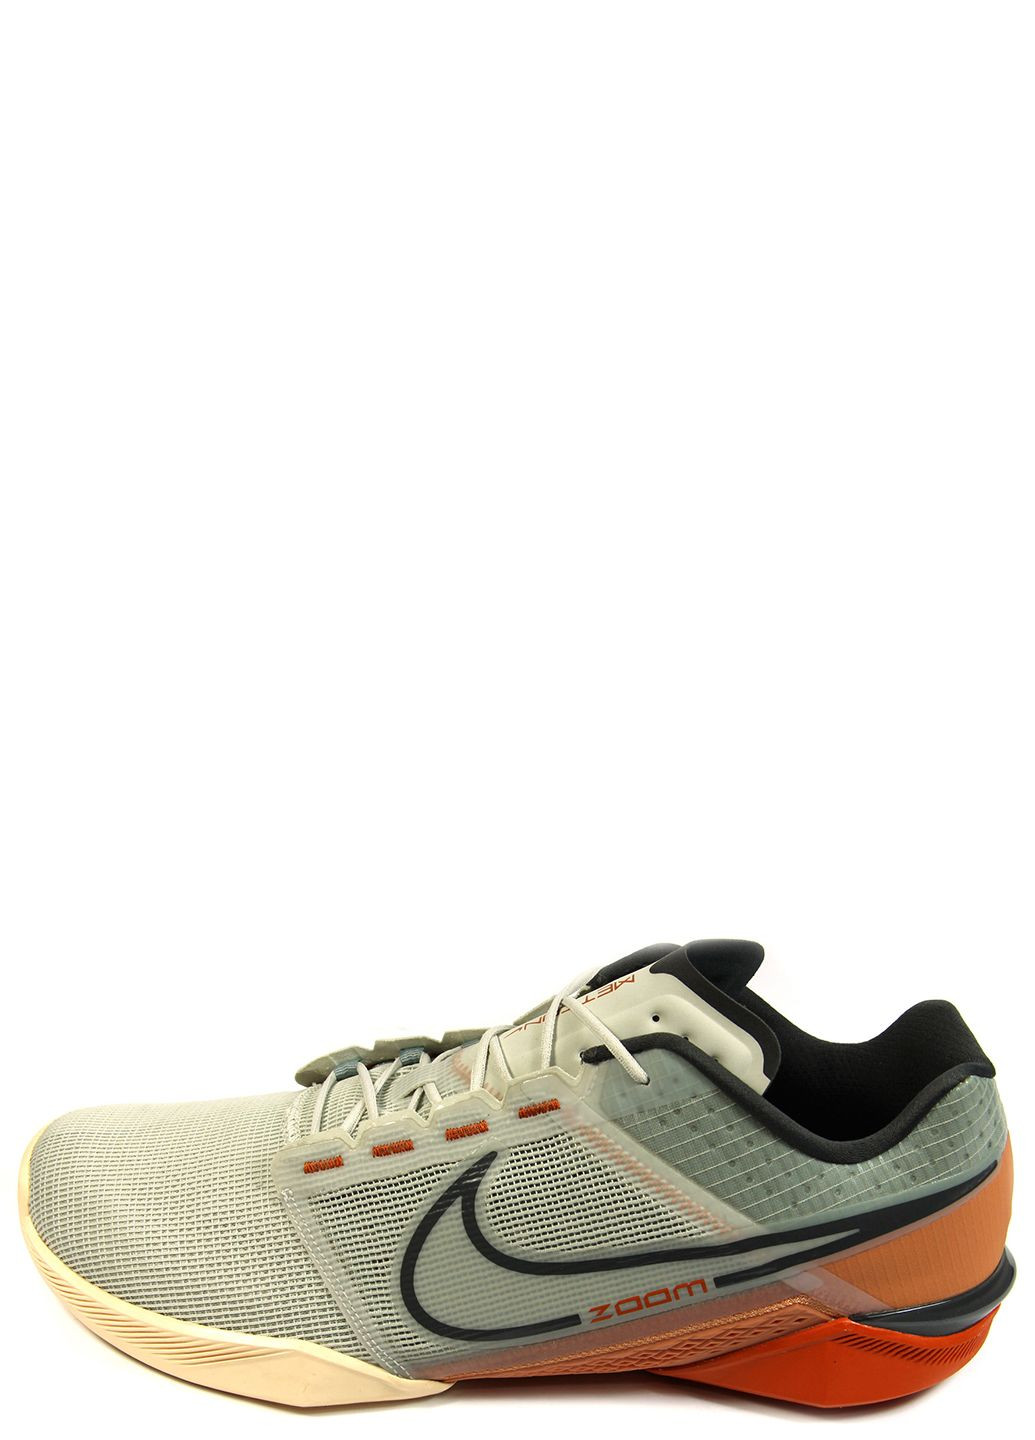 Цветные демисезонные мужские кроссовки zoom metcon turbo 2 dh3392-006 Nike